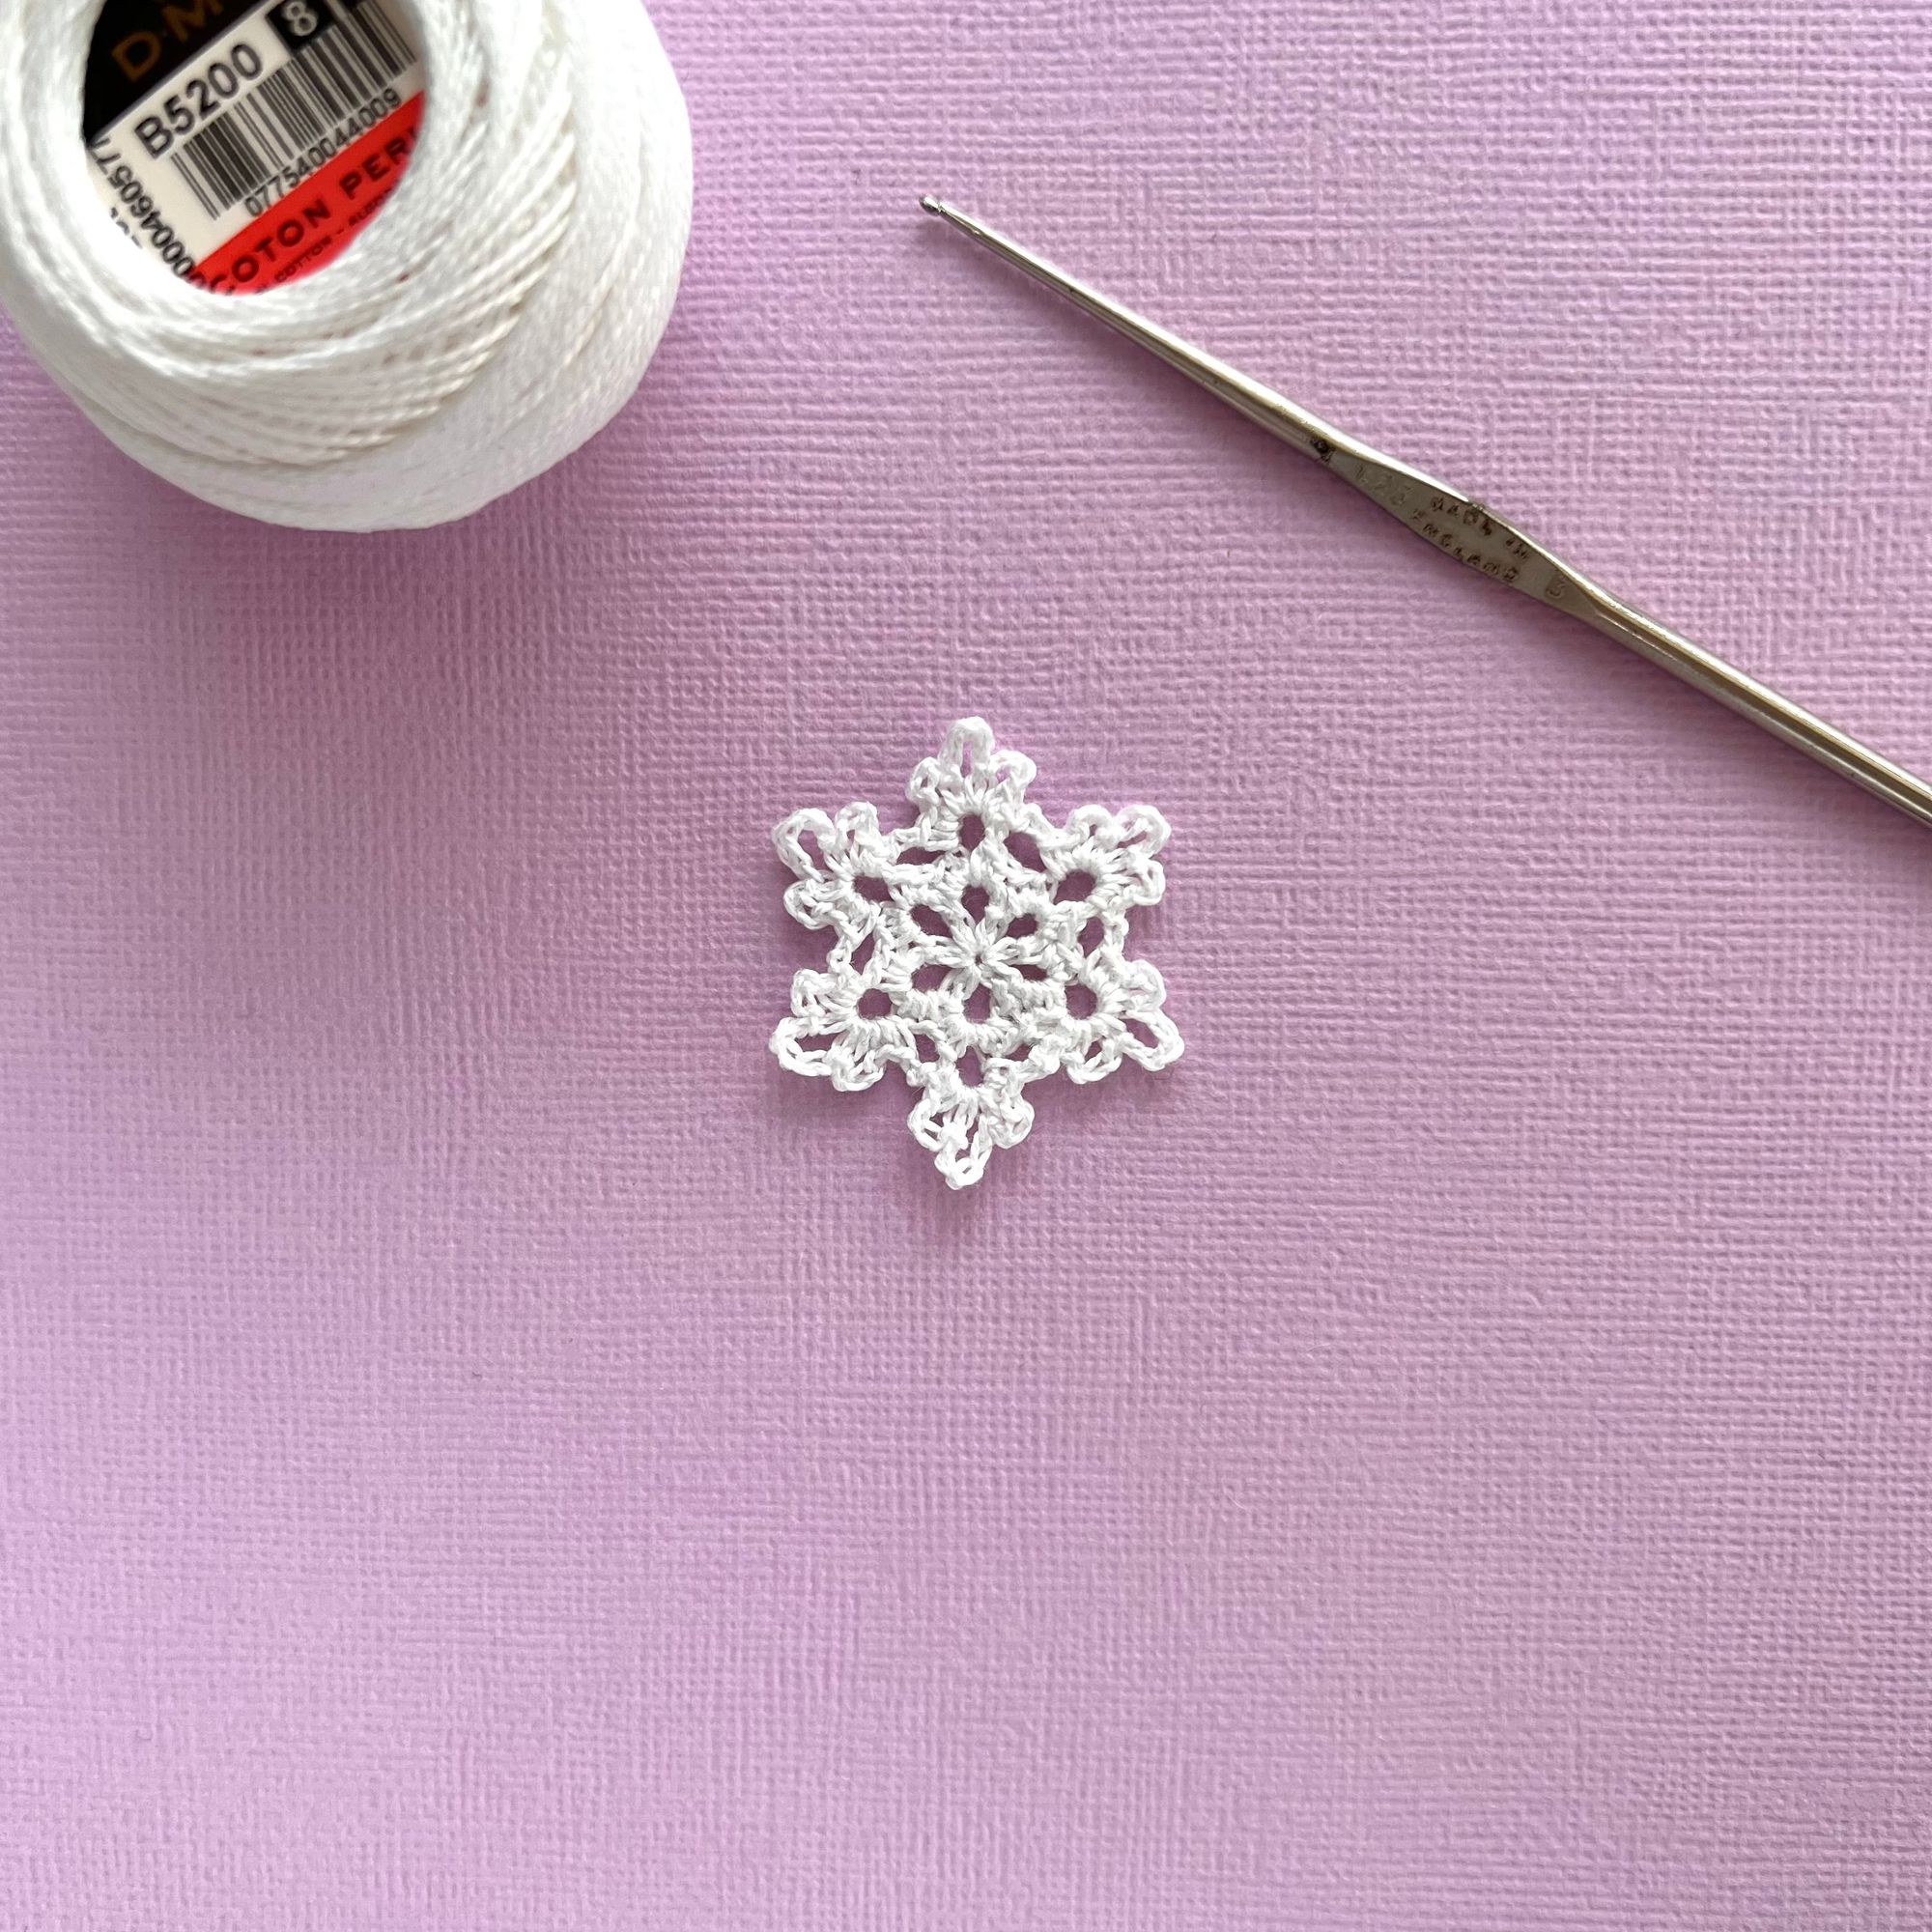 Mini Crochet snowflake pattern